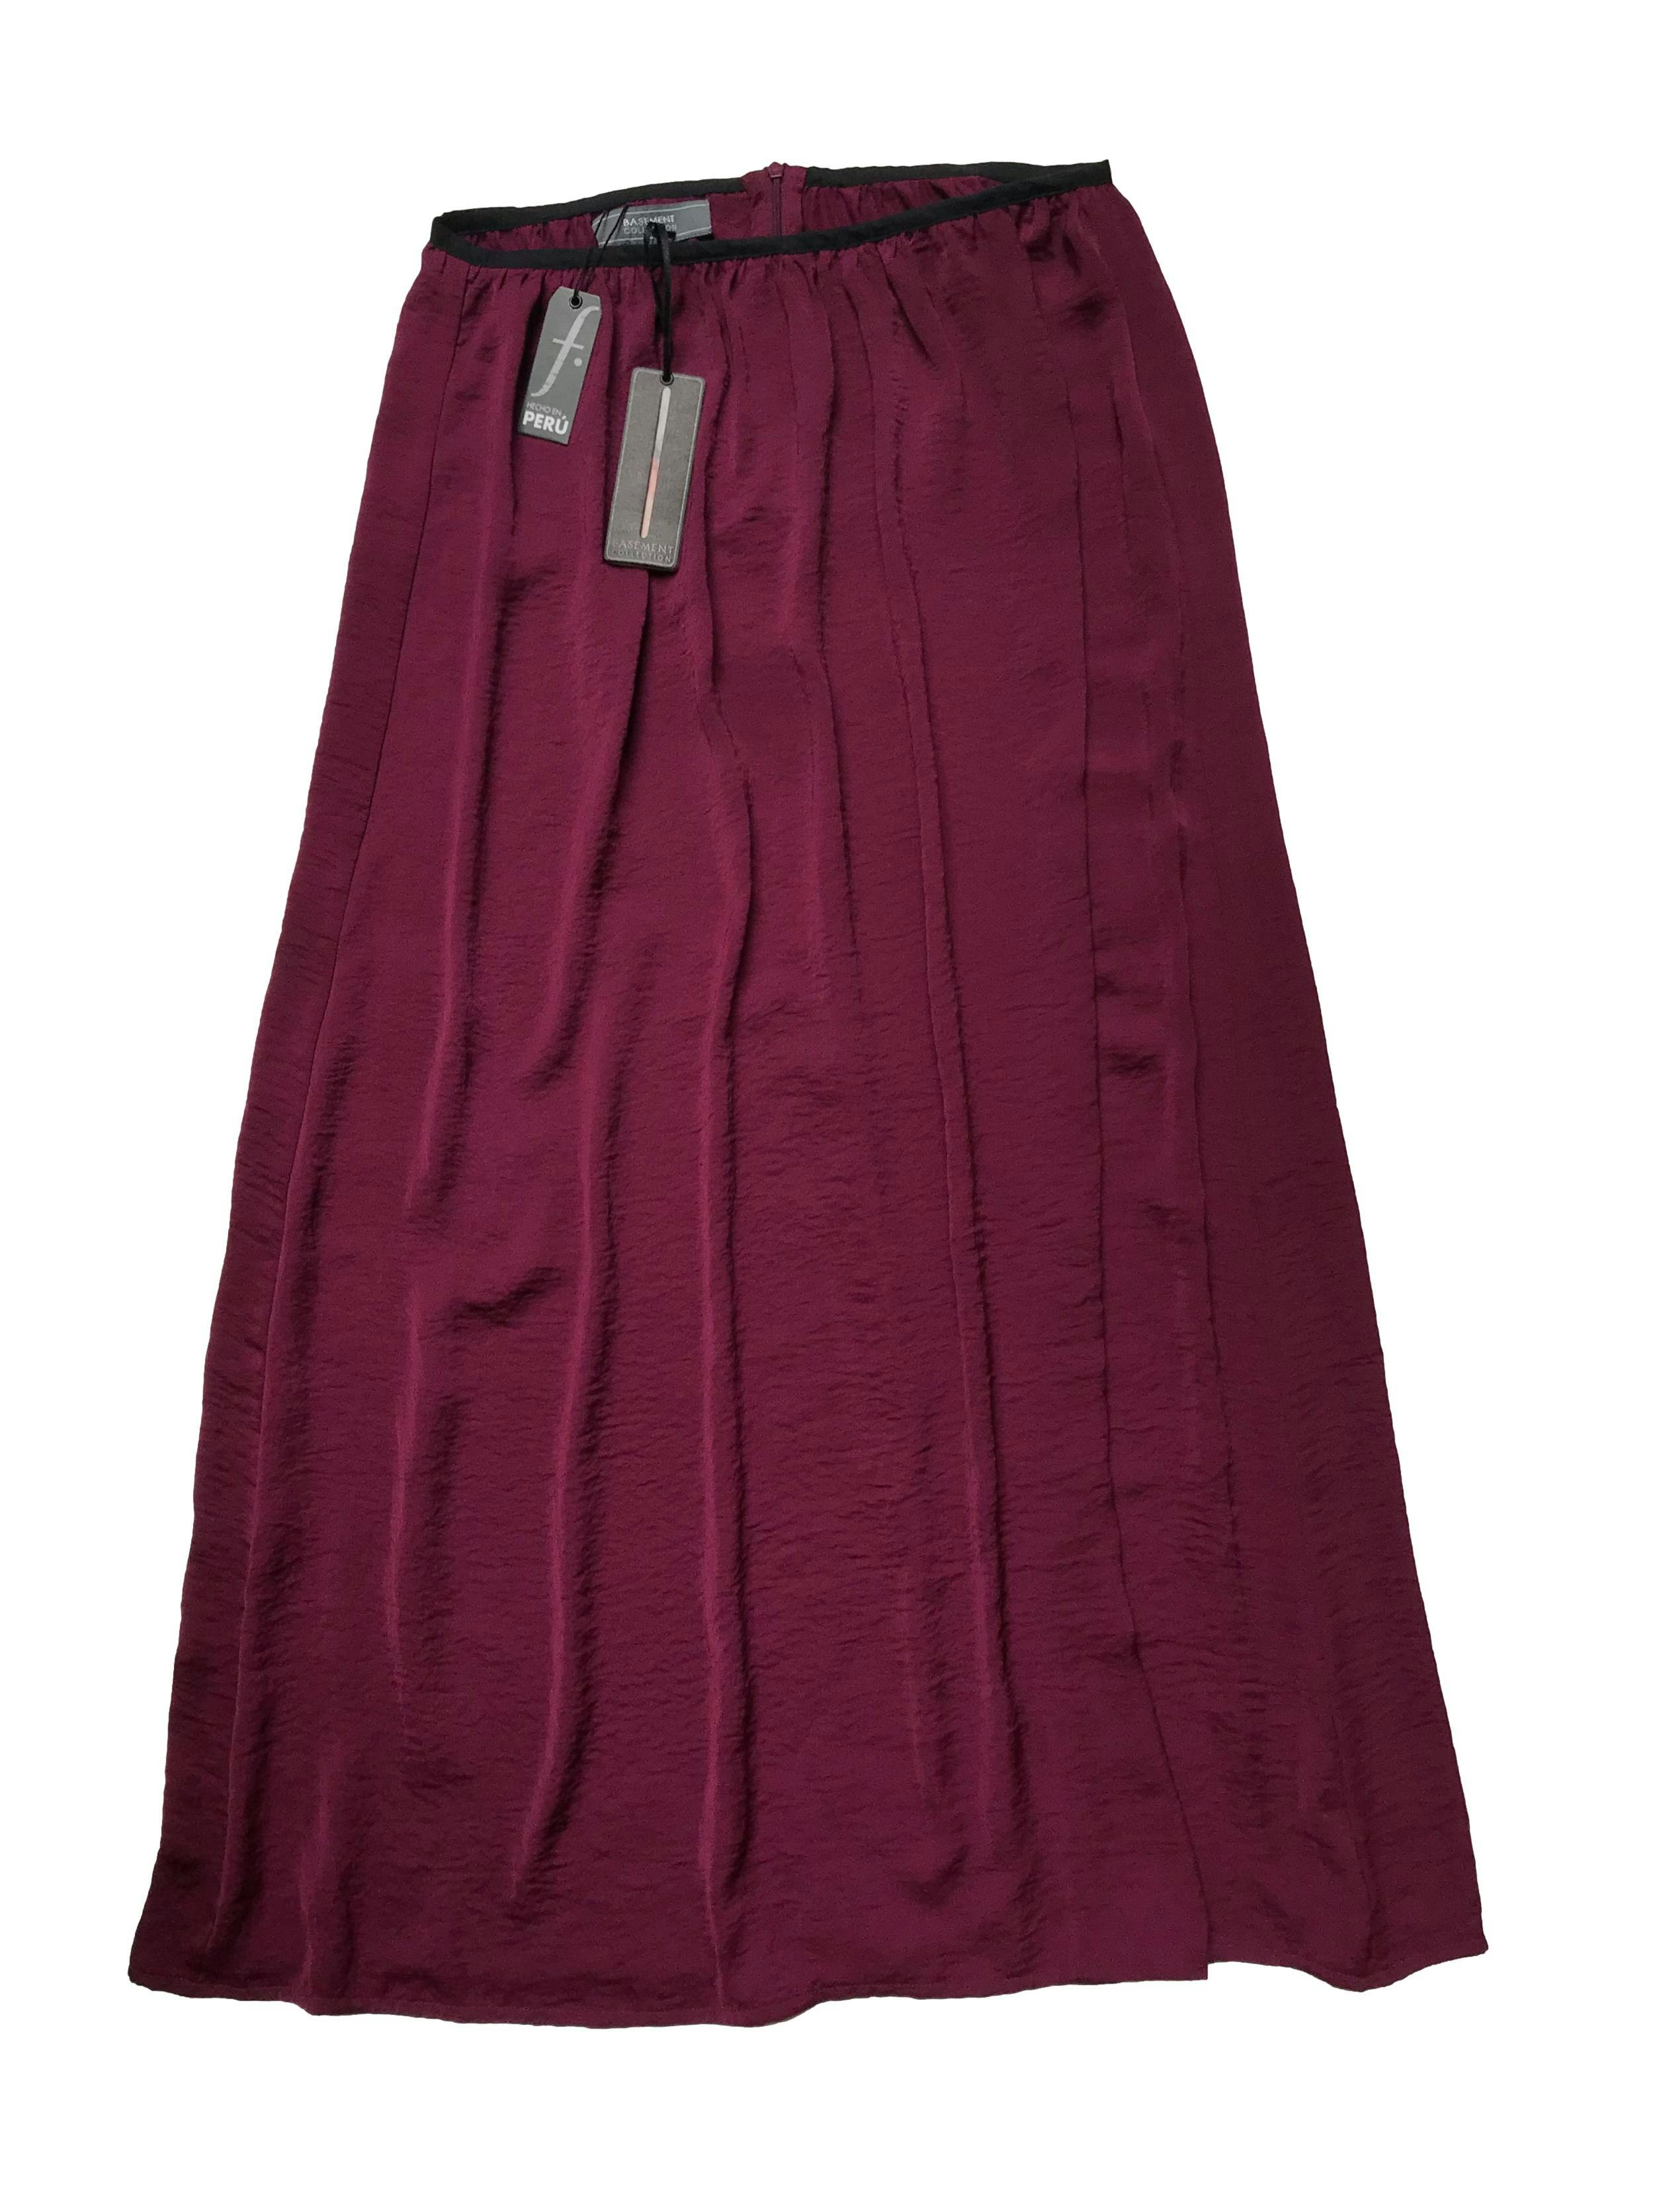 Falda larga Basement, guinda ligeramente satinada, tela sedosa, tiene cierre posterior. Cintura 76cm Largo 95cm . Nueva con etiqueta